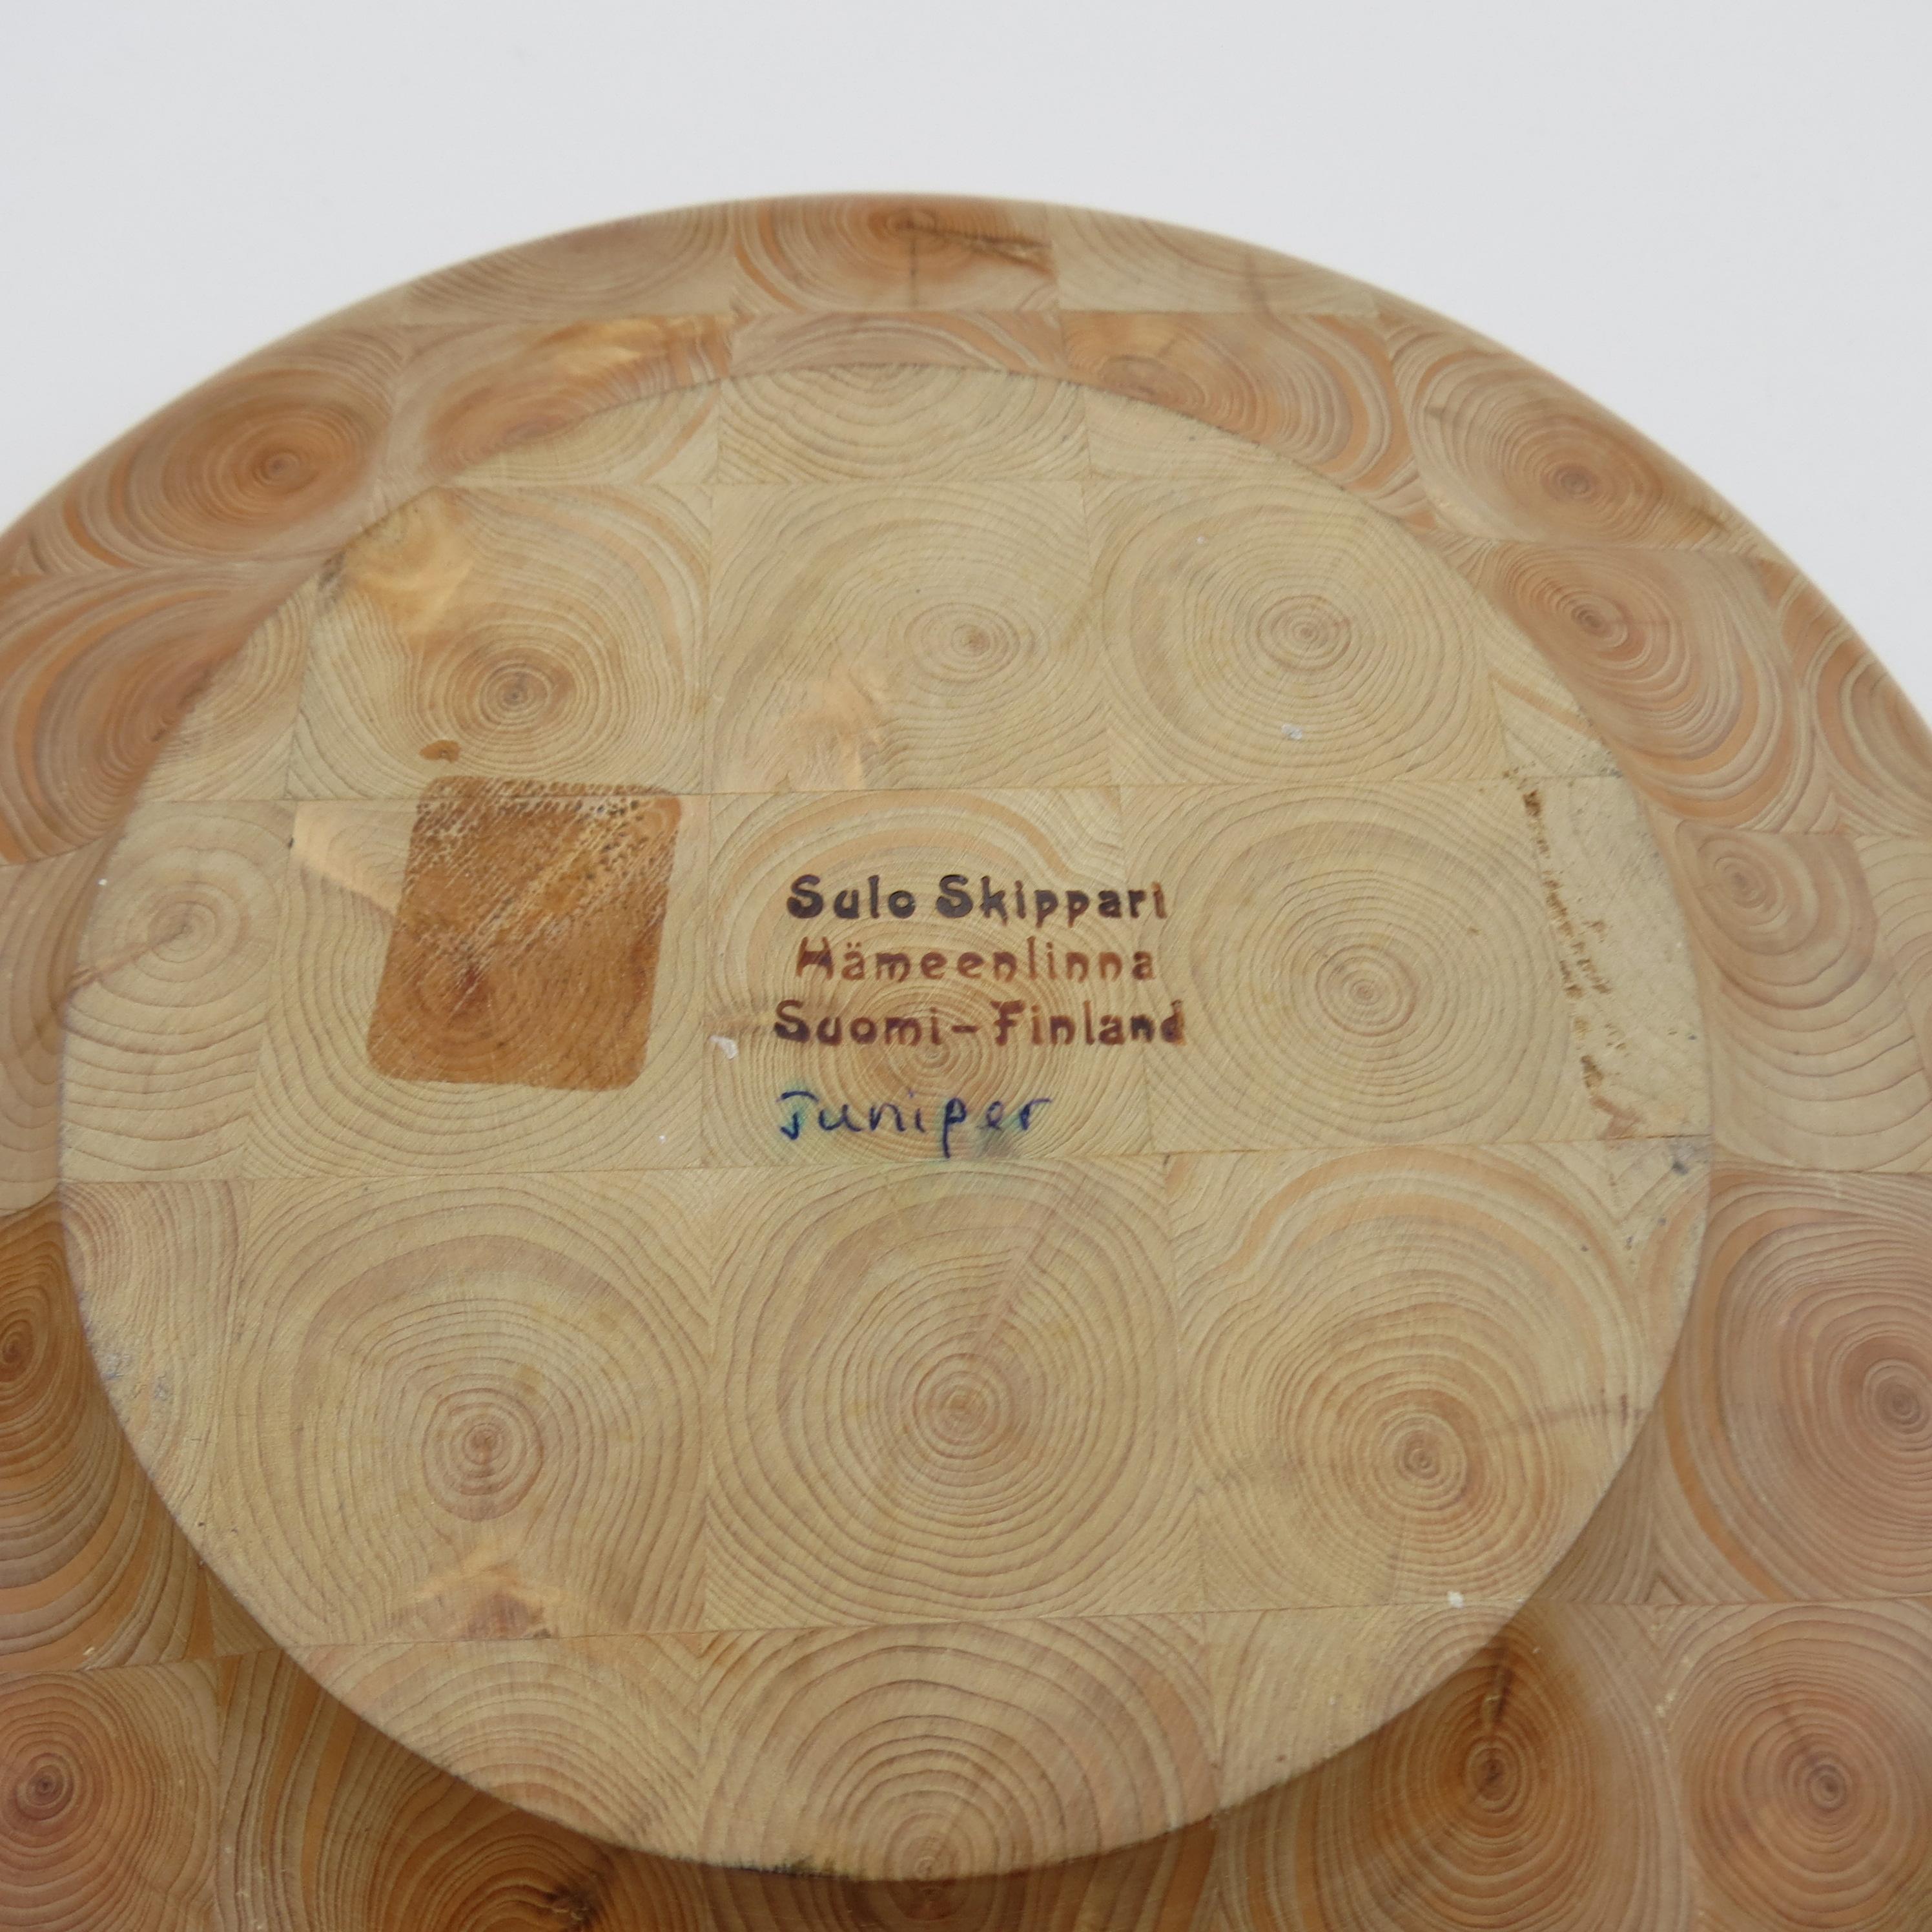 Pair of Finnish Hand Produced Juniper Wooden Block Tray Plates, 1970s, Finland 7